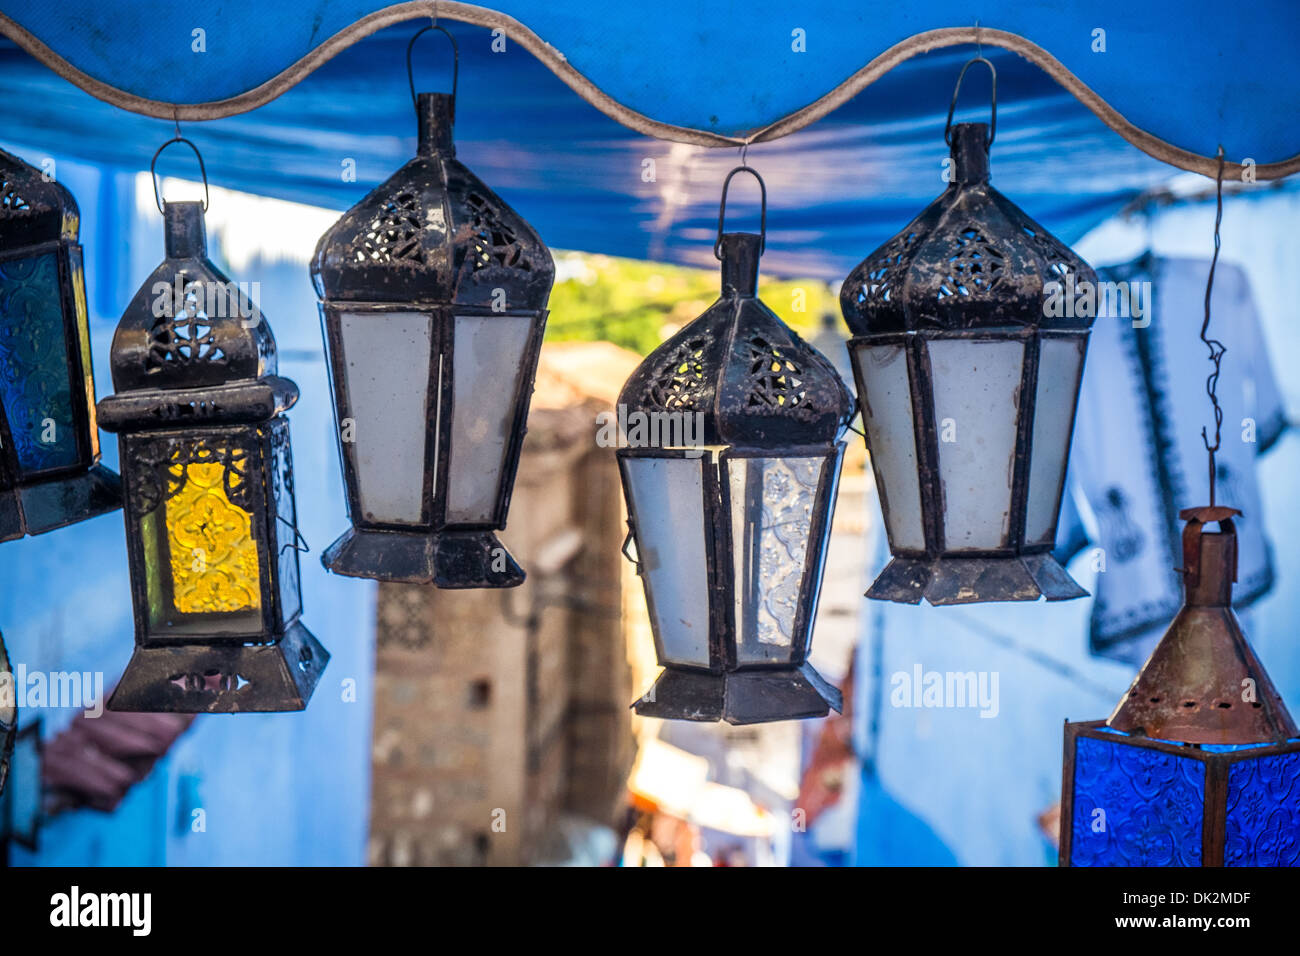 La belle bleue médina de Chefchaouen au Maroc Banque D'Images